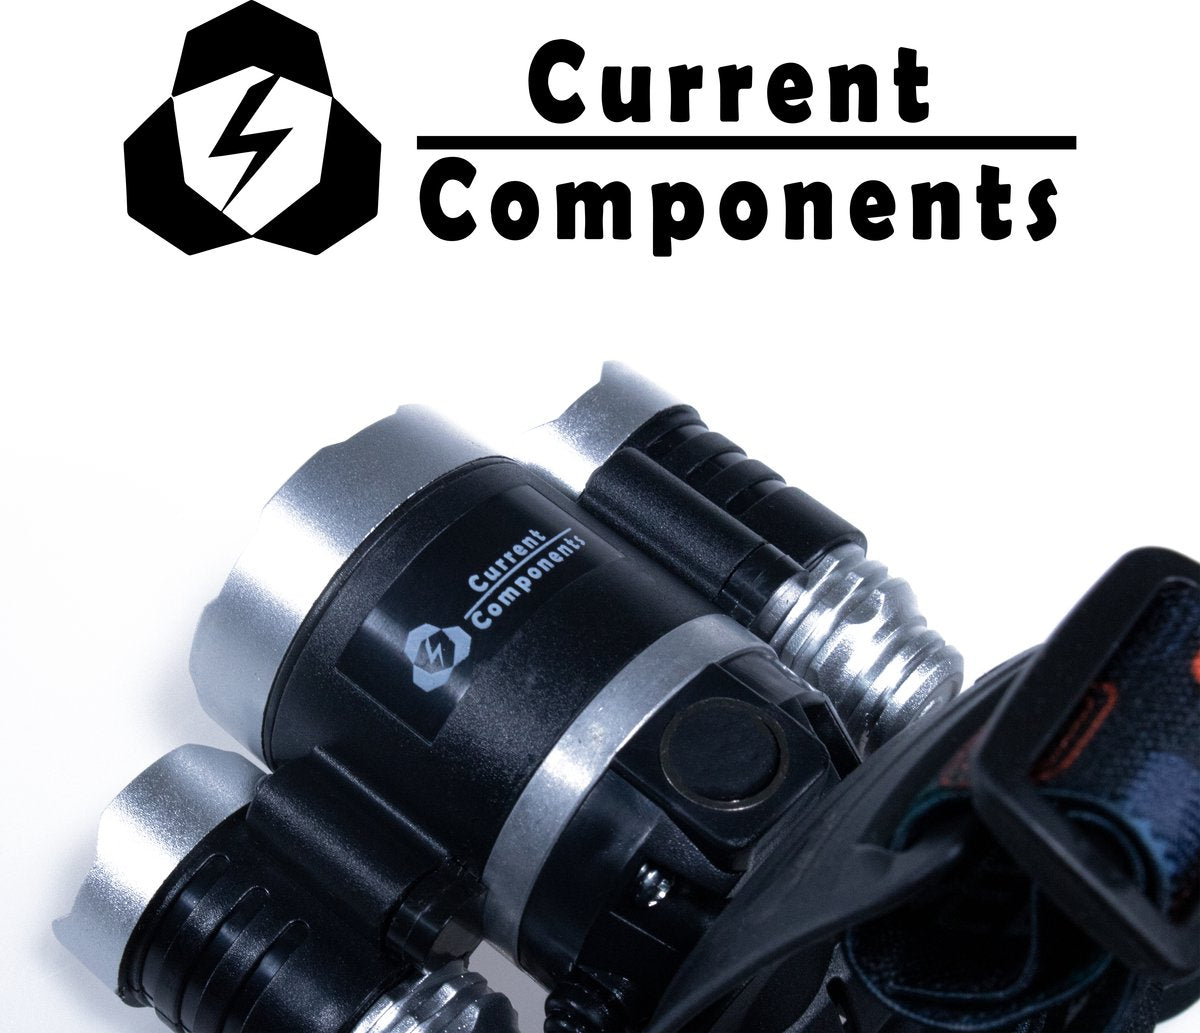 Current Components - Hoofdlamp LED Oplaadbaar - Bewegingssensor - Inclusief Batterijen En Adapters - Kantelbaar